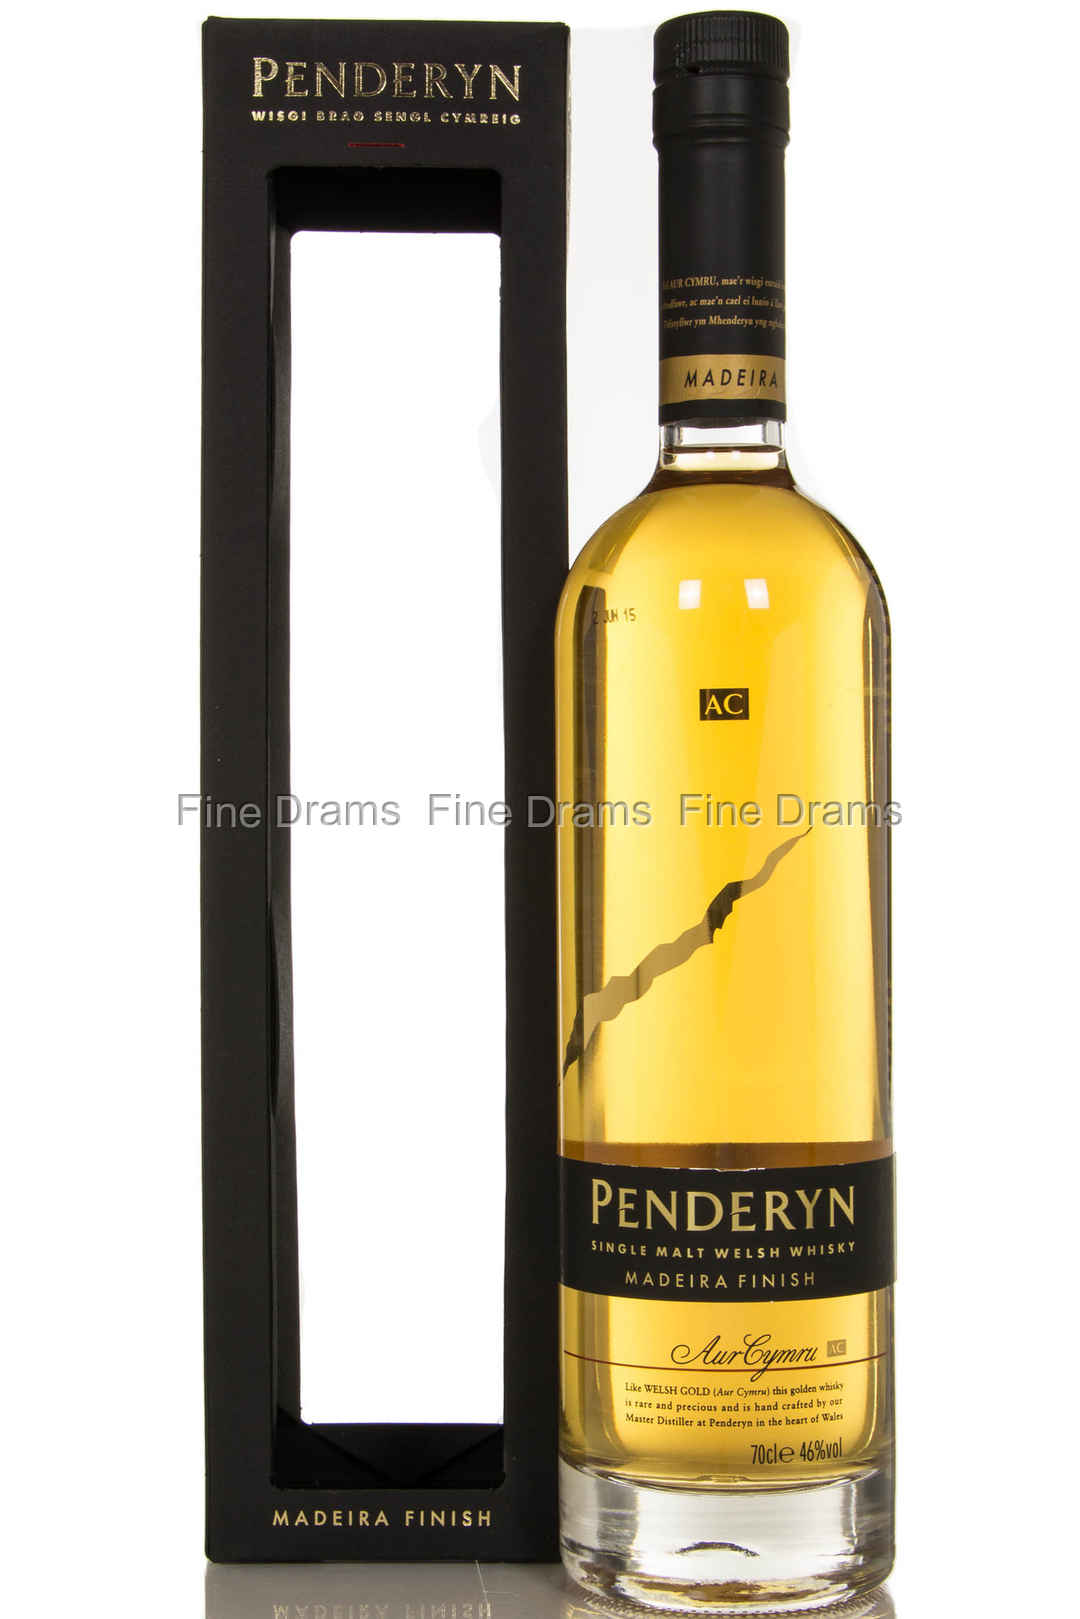 Penderyn, a sárkány itala - Magányos Maláta